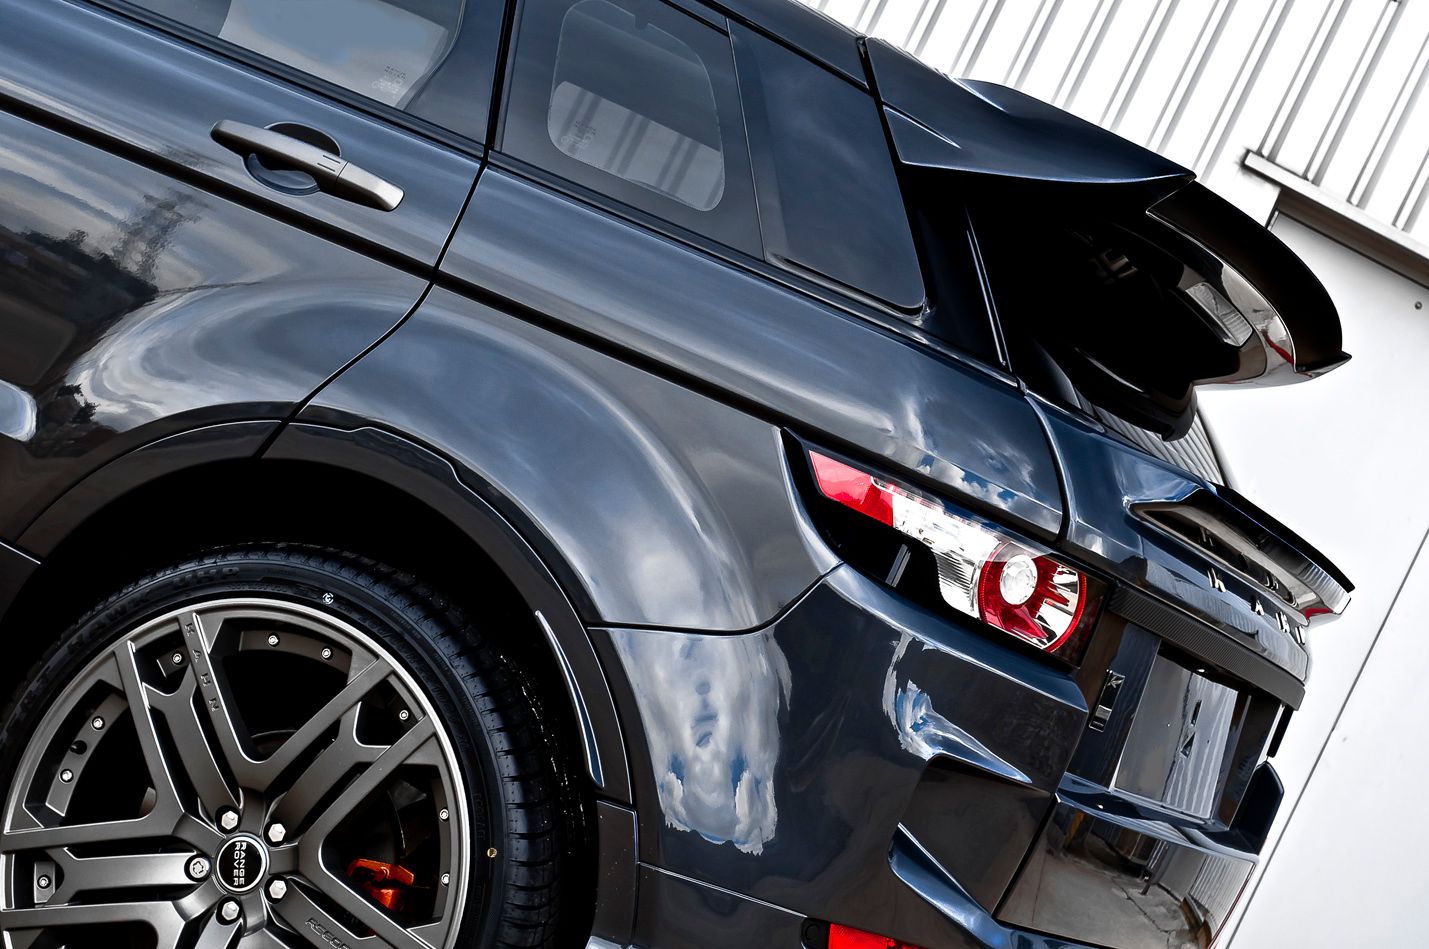 2013 Range Rover Evoque Dark Tungsten RS250 by Kahn Design